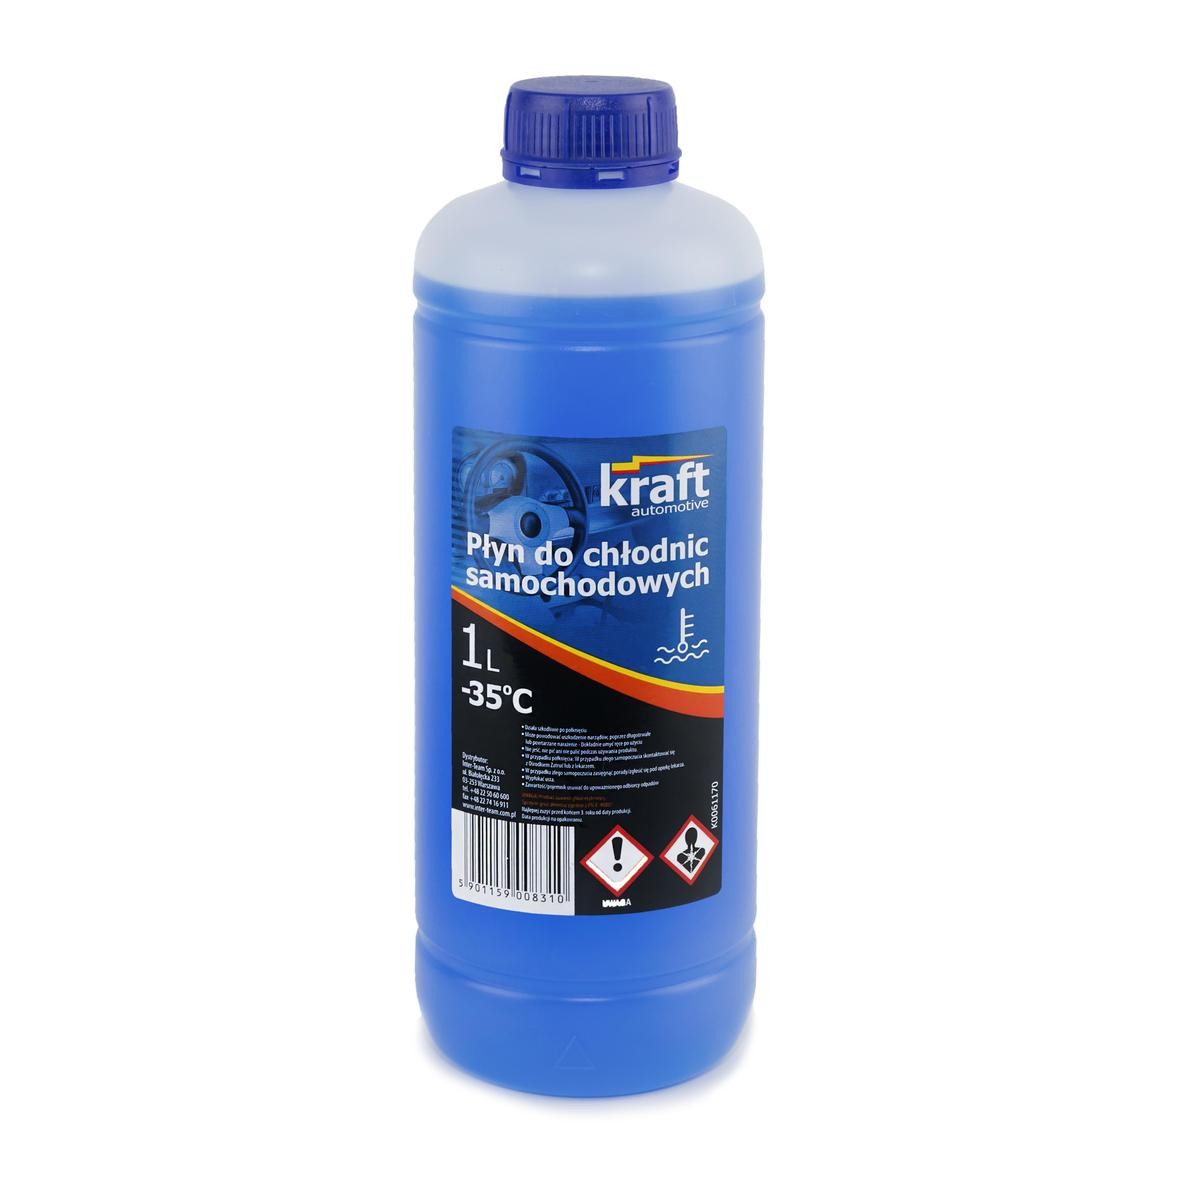 MOTO-MORINI GRANPASSO Kühlmittel G11, ASTM D3306-03 Blau, 1l KRAFT G11 K0061170